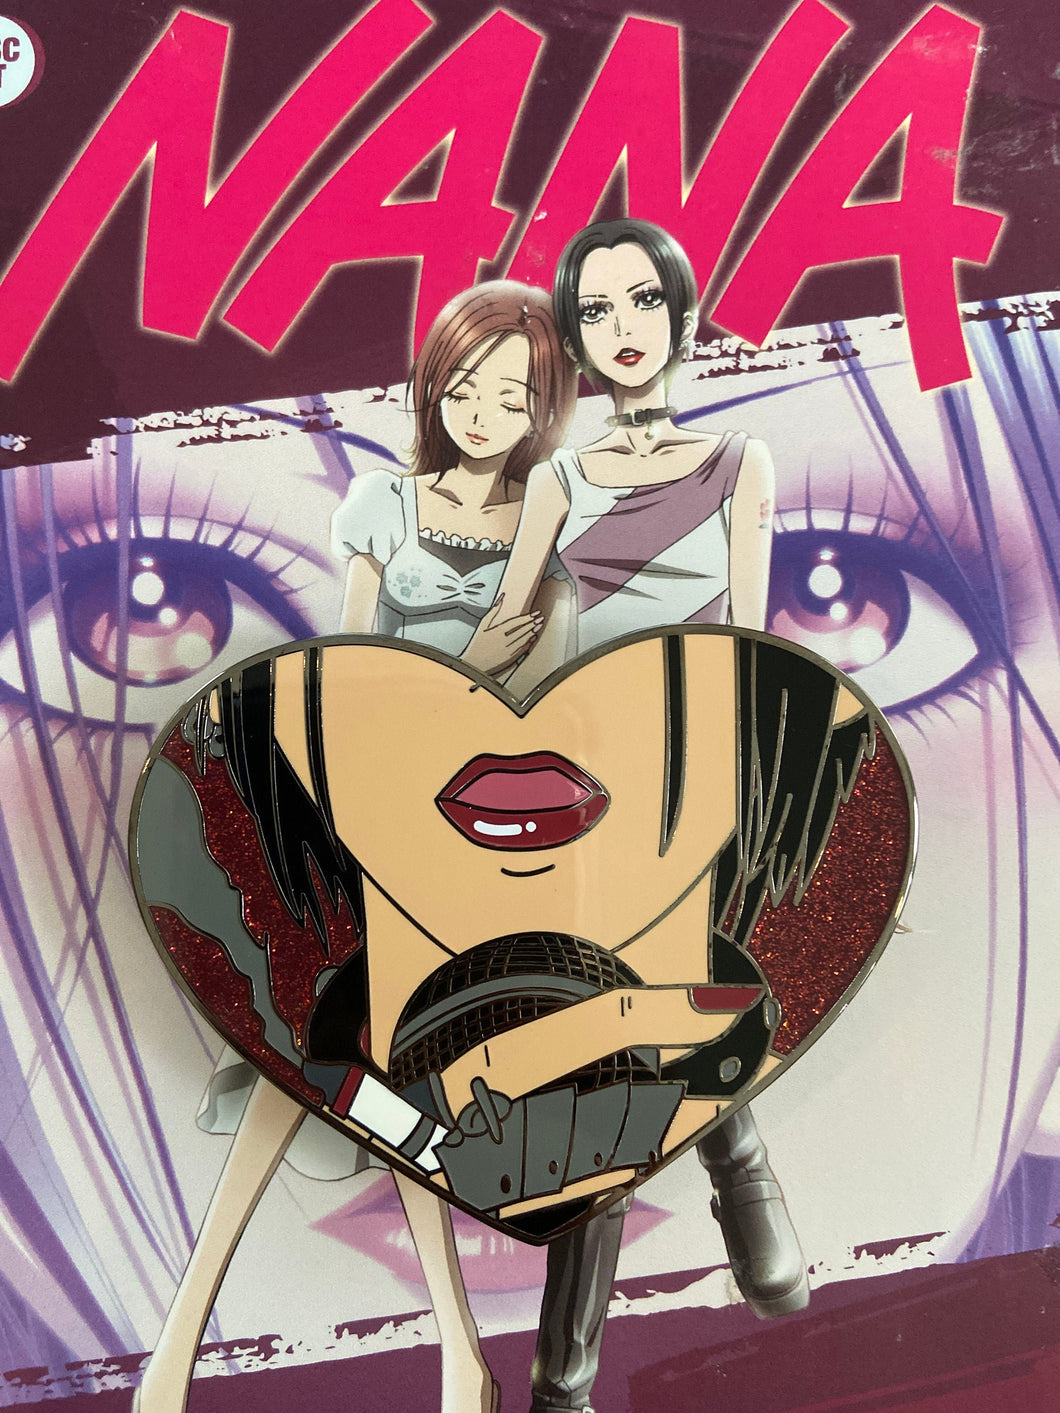 Nana Anime Pink | Poster